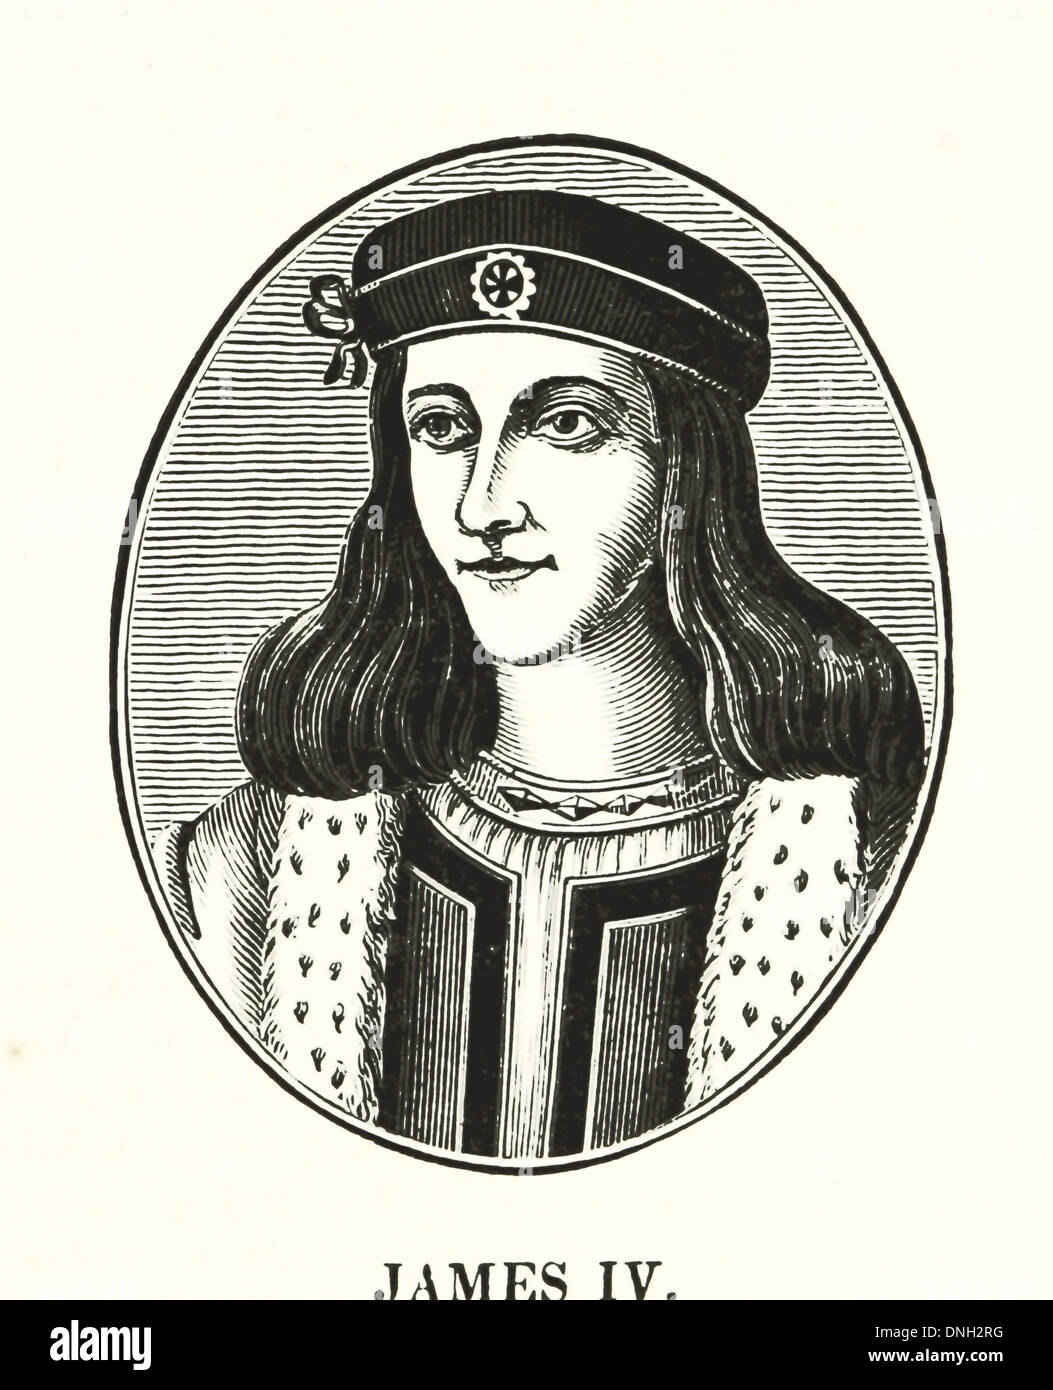 James IV (17 März 1473 – 9 September 1513) - König von Schottland von 11 Juni 1488 bis zu seinem Tod Stockfoto